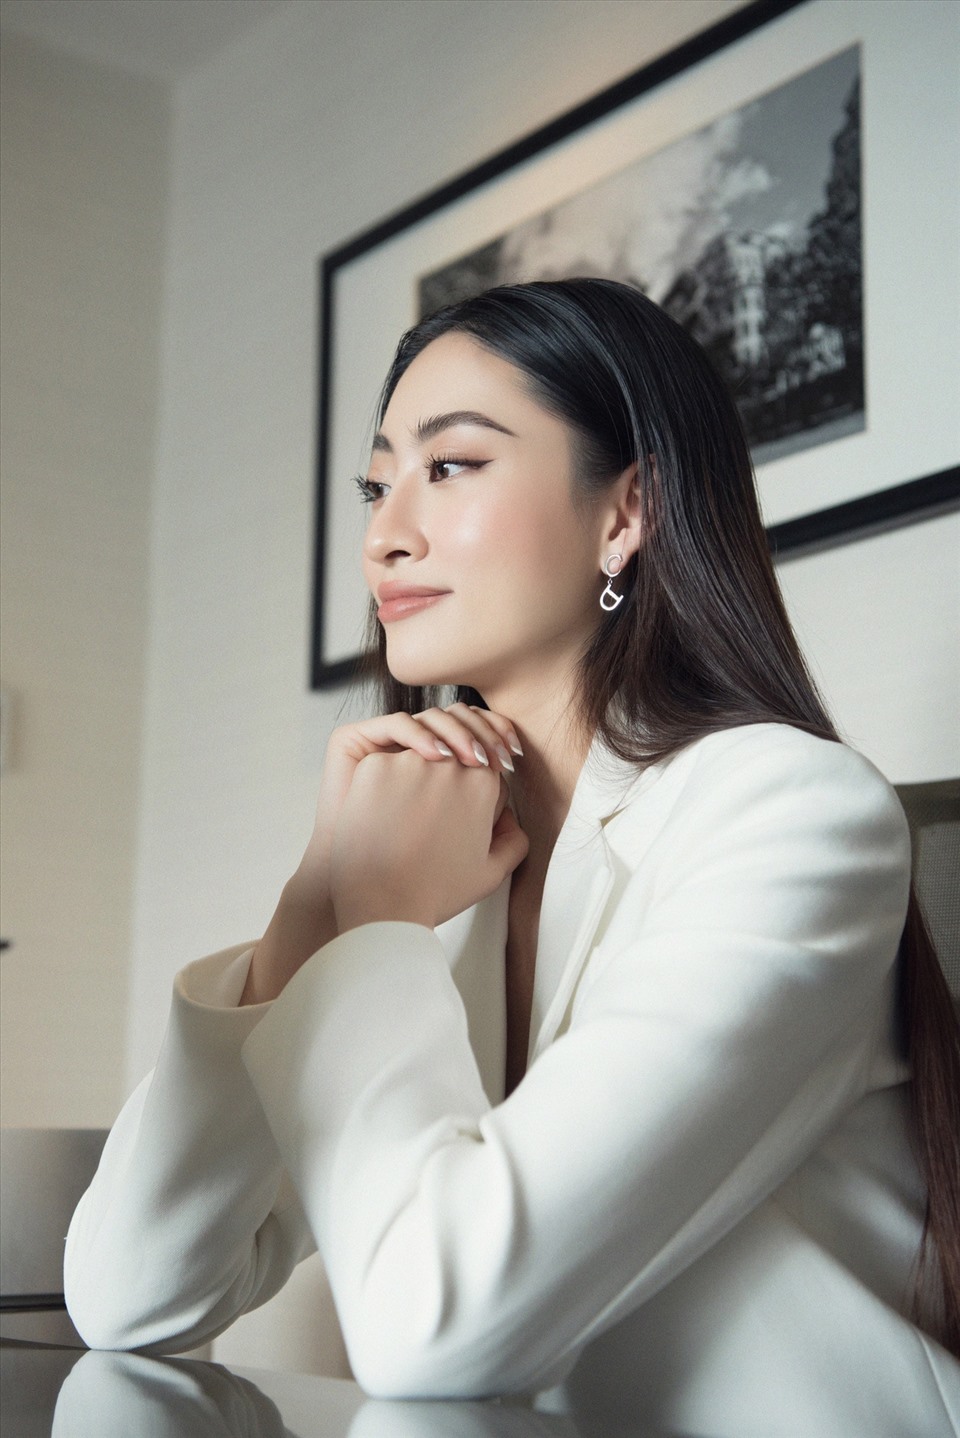 Tham gia buổi trò chuyện, Miss World Vietnam 2019 lựa chọn vest trắng thể hiện